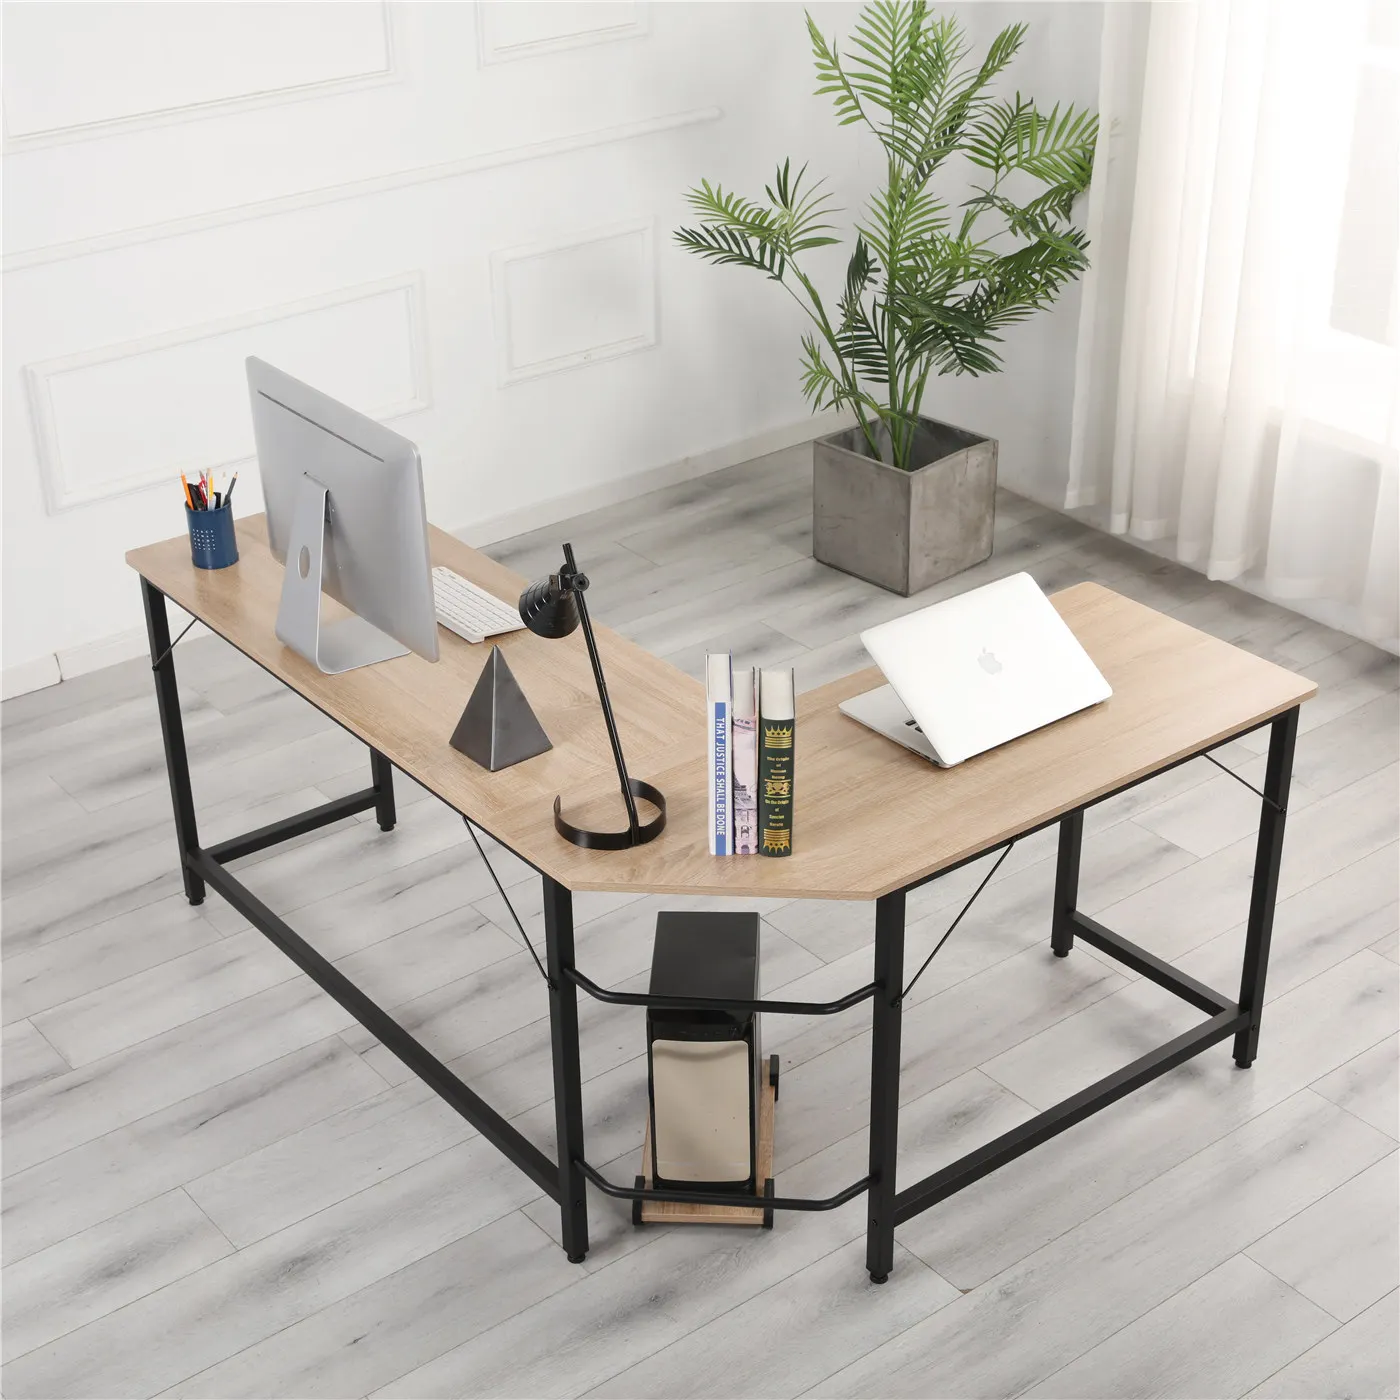 

L-образный настольный компьютерный стол, Рабочий стол/офисный стол, угловой стол, простой в сборке, может использоваться в доме и офисе, дере...